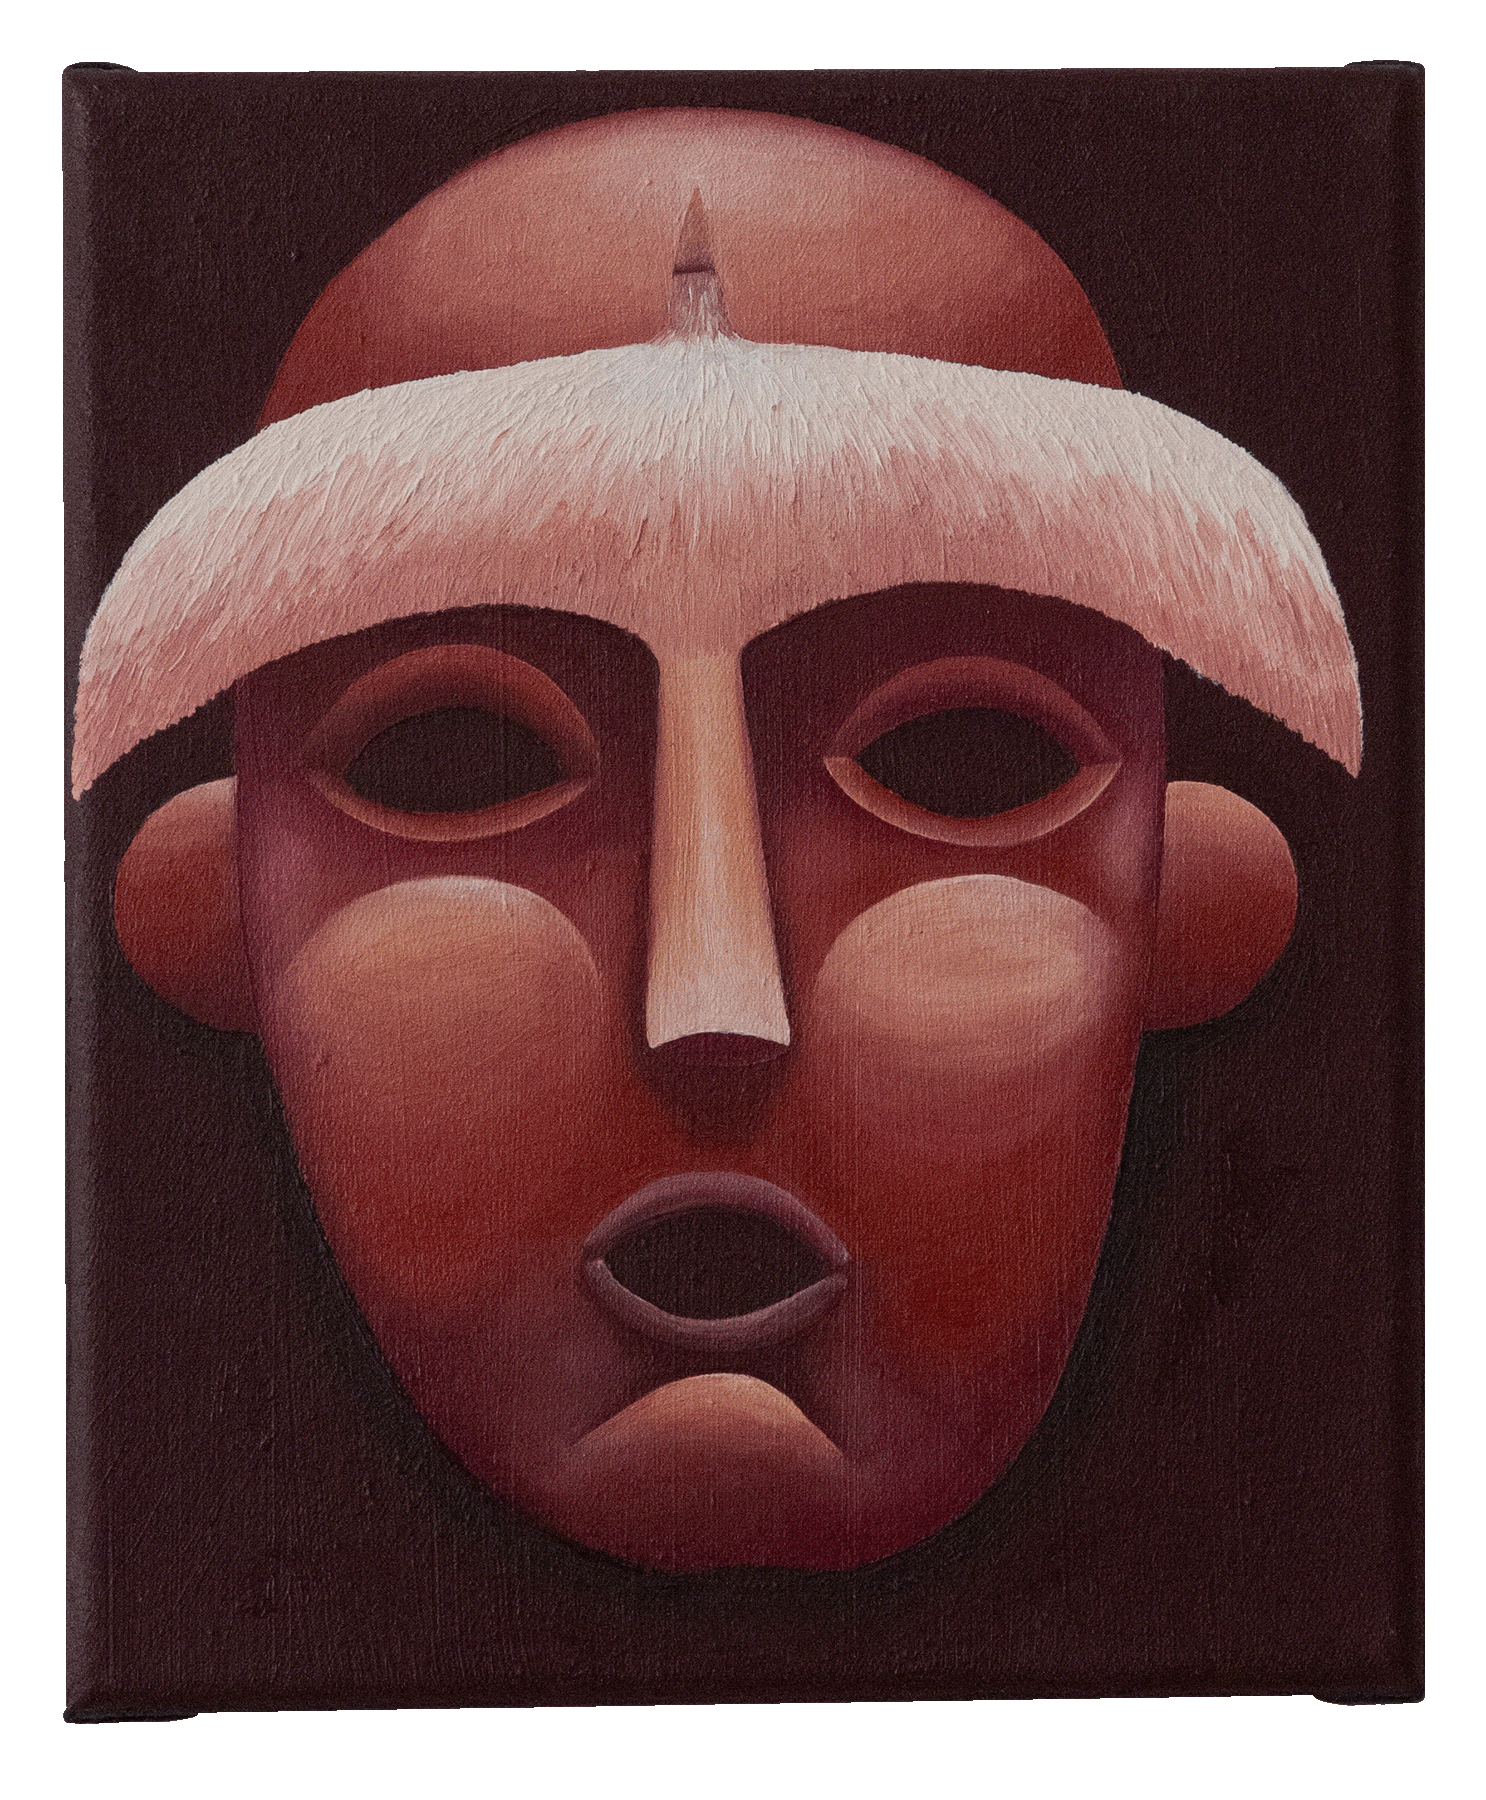 Máscara (Mask)